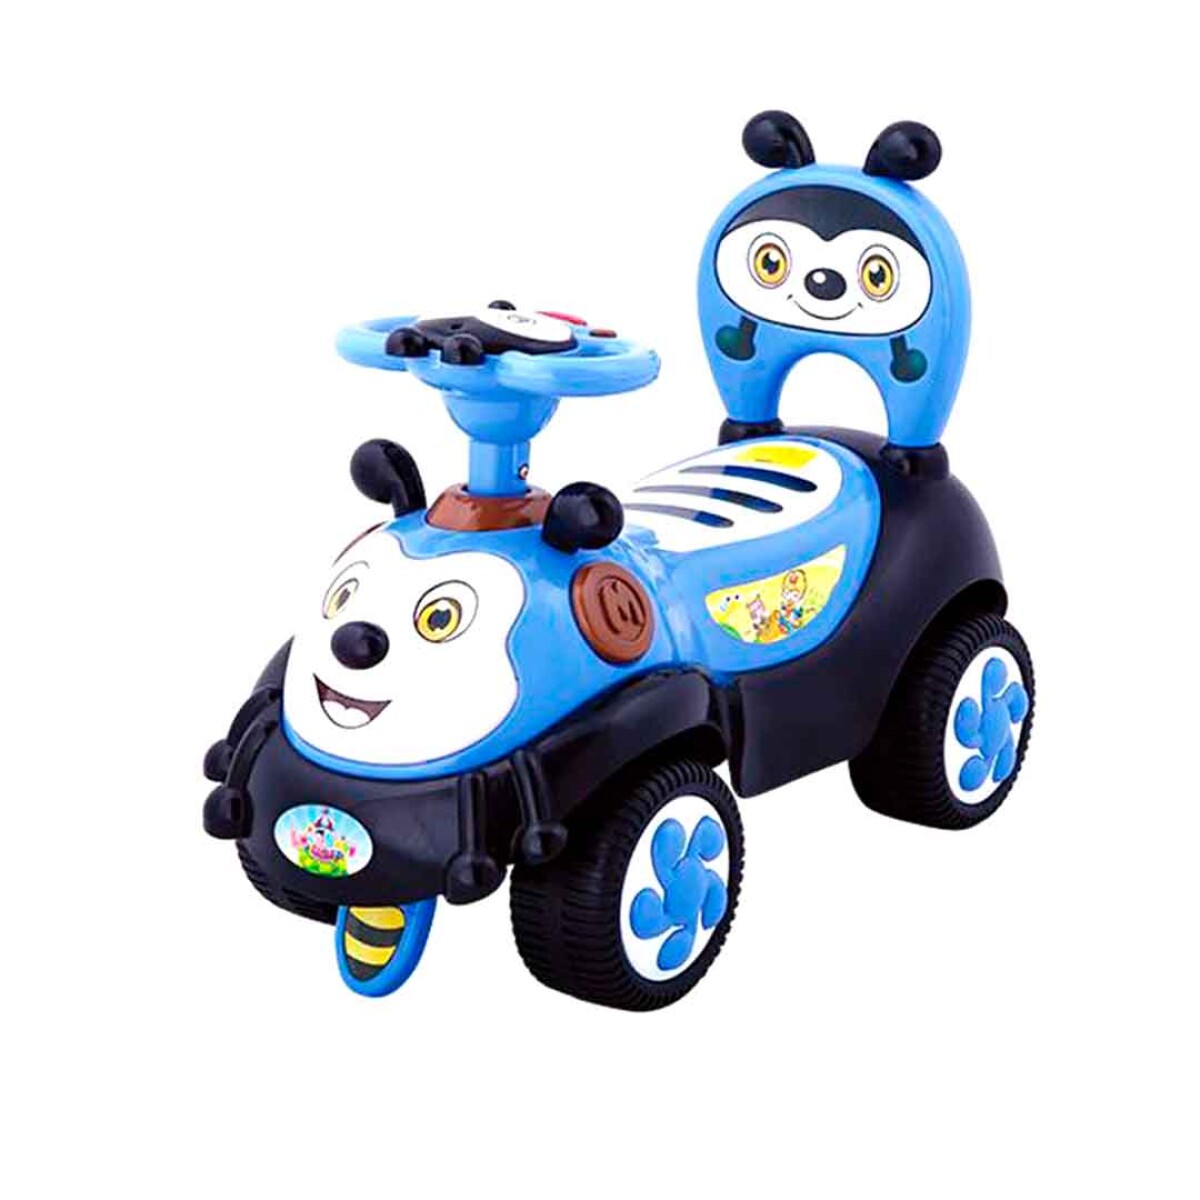 Buggy panda con musica y luces funcion caminador azul - AZUL 